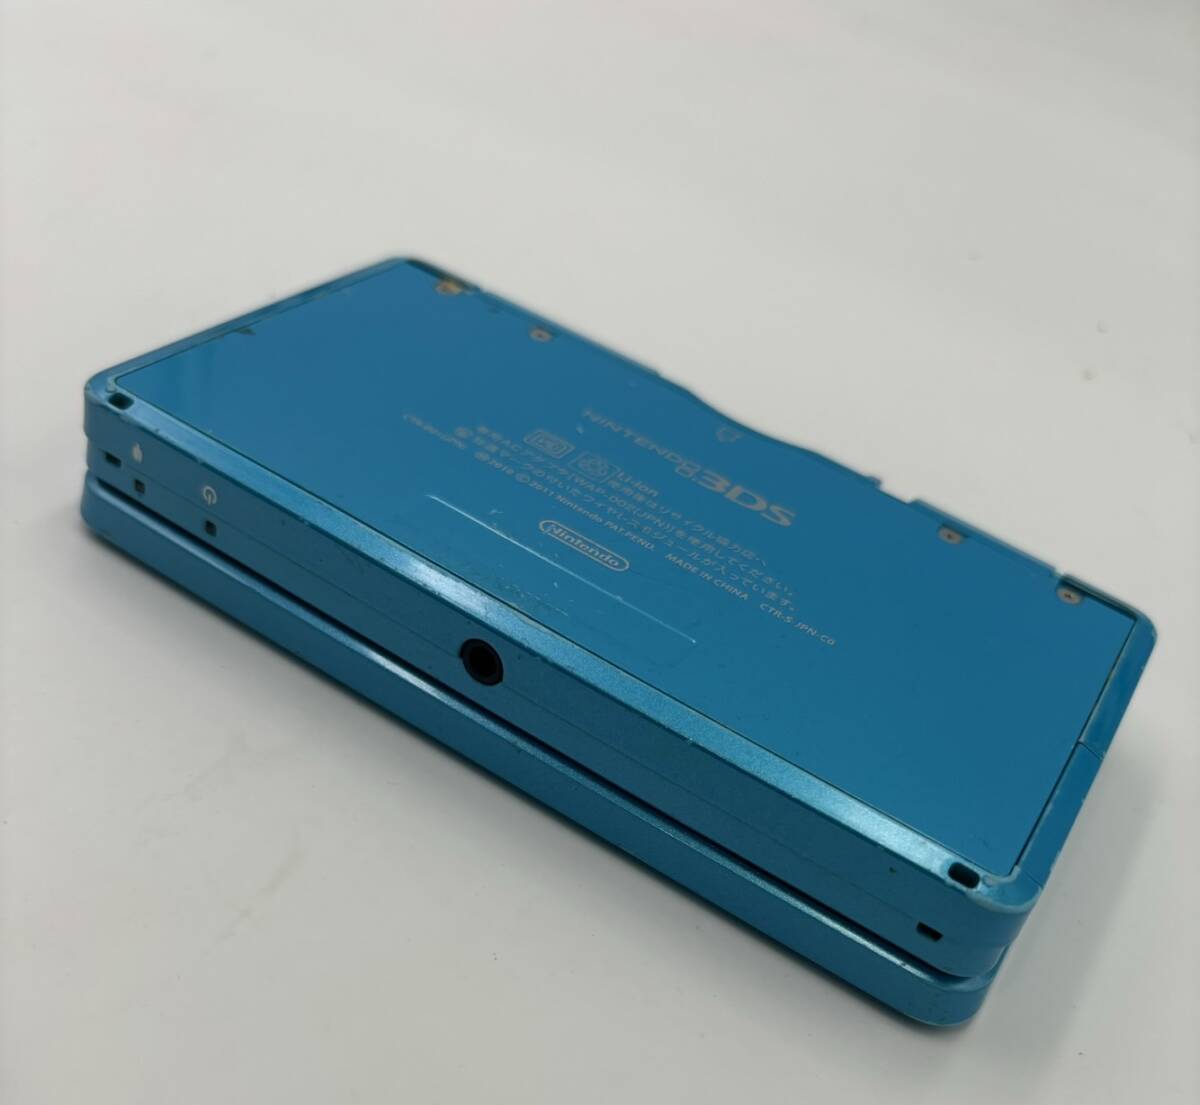  Junk Nintendo 3DS light blue blue 